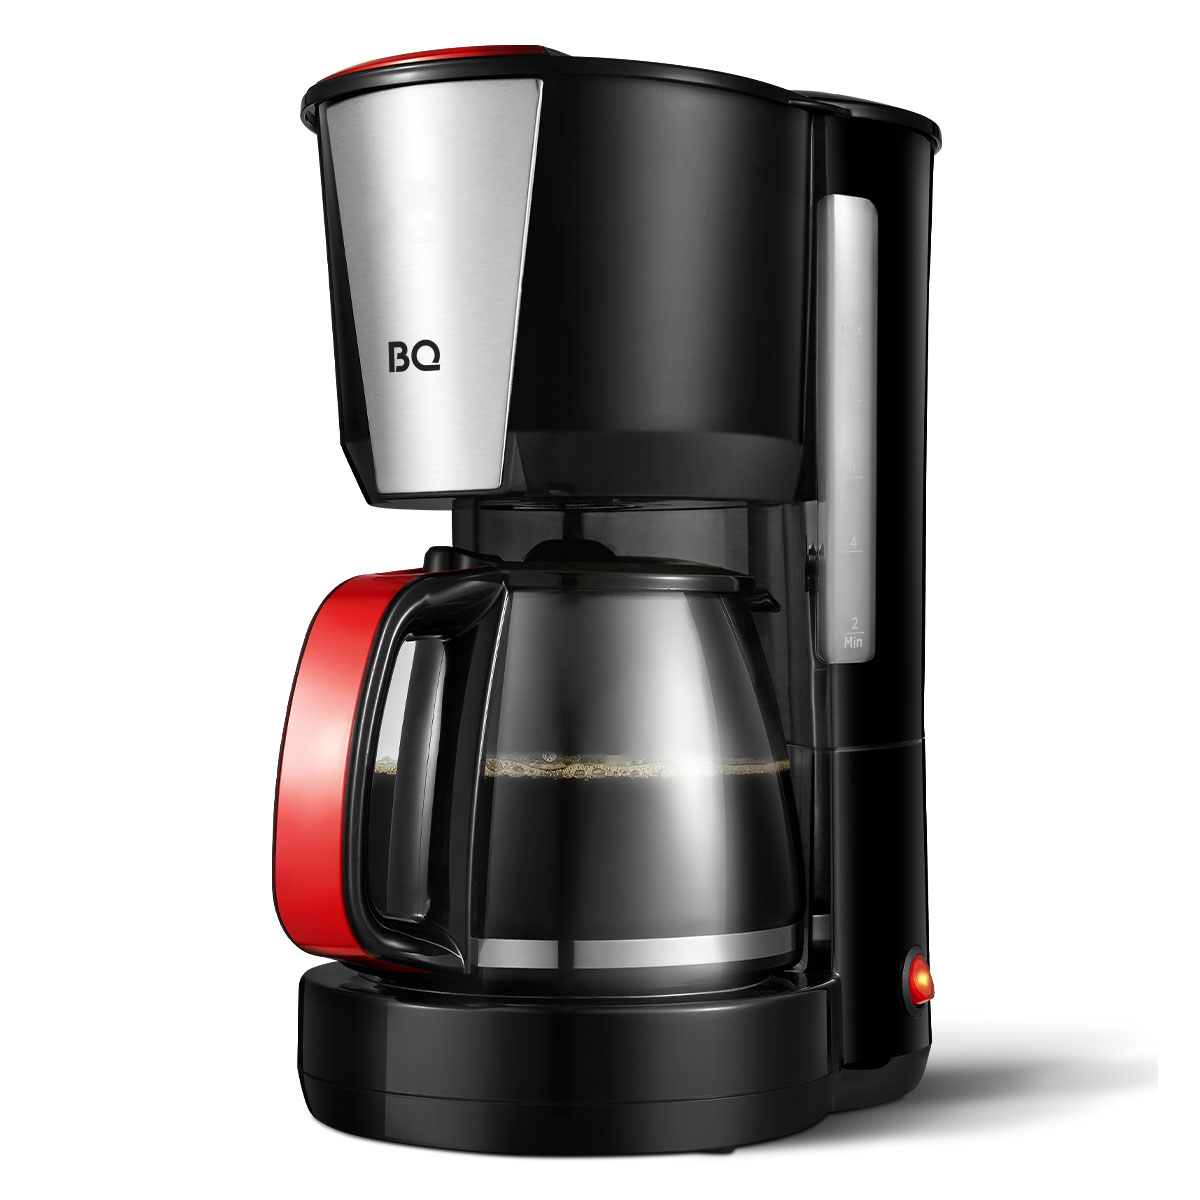 Кофеварка капельного типа BQ CM1008 красный, черный кофеварка kelli kl 1445 красный